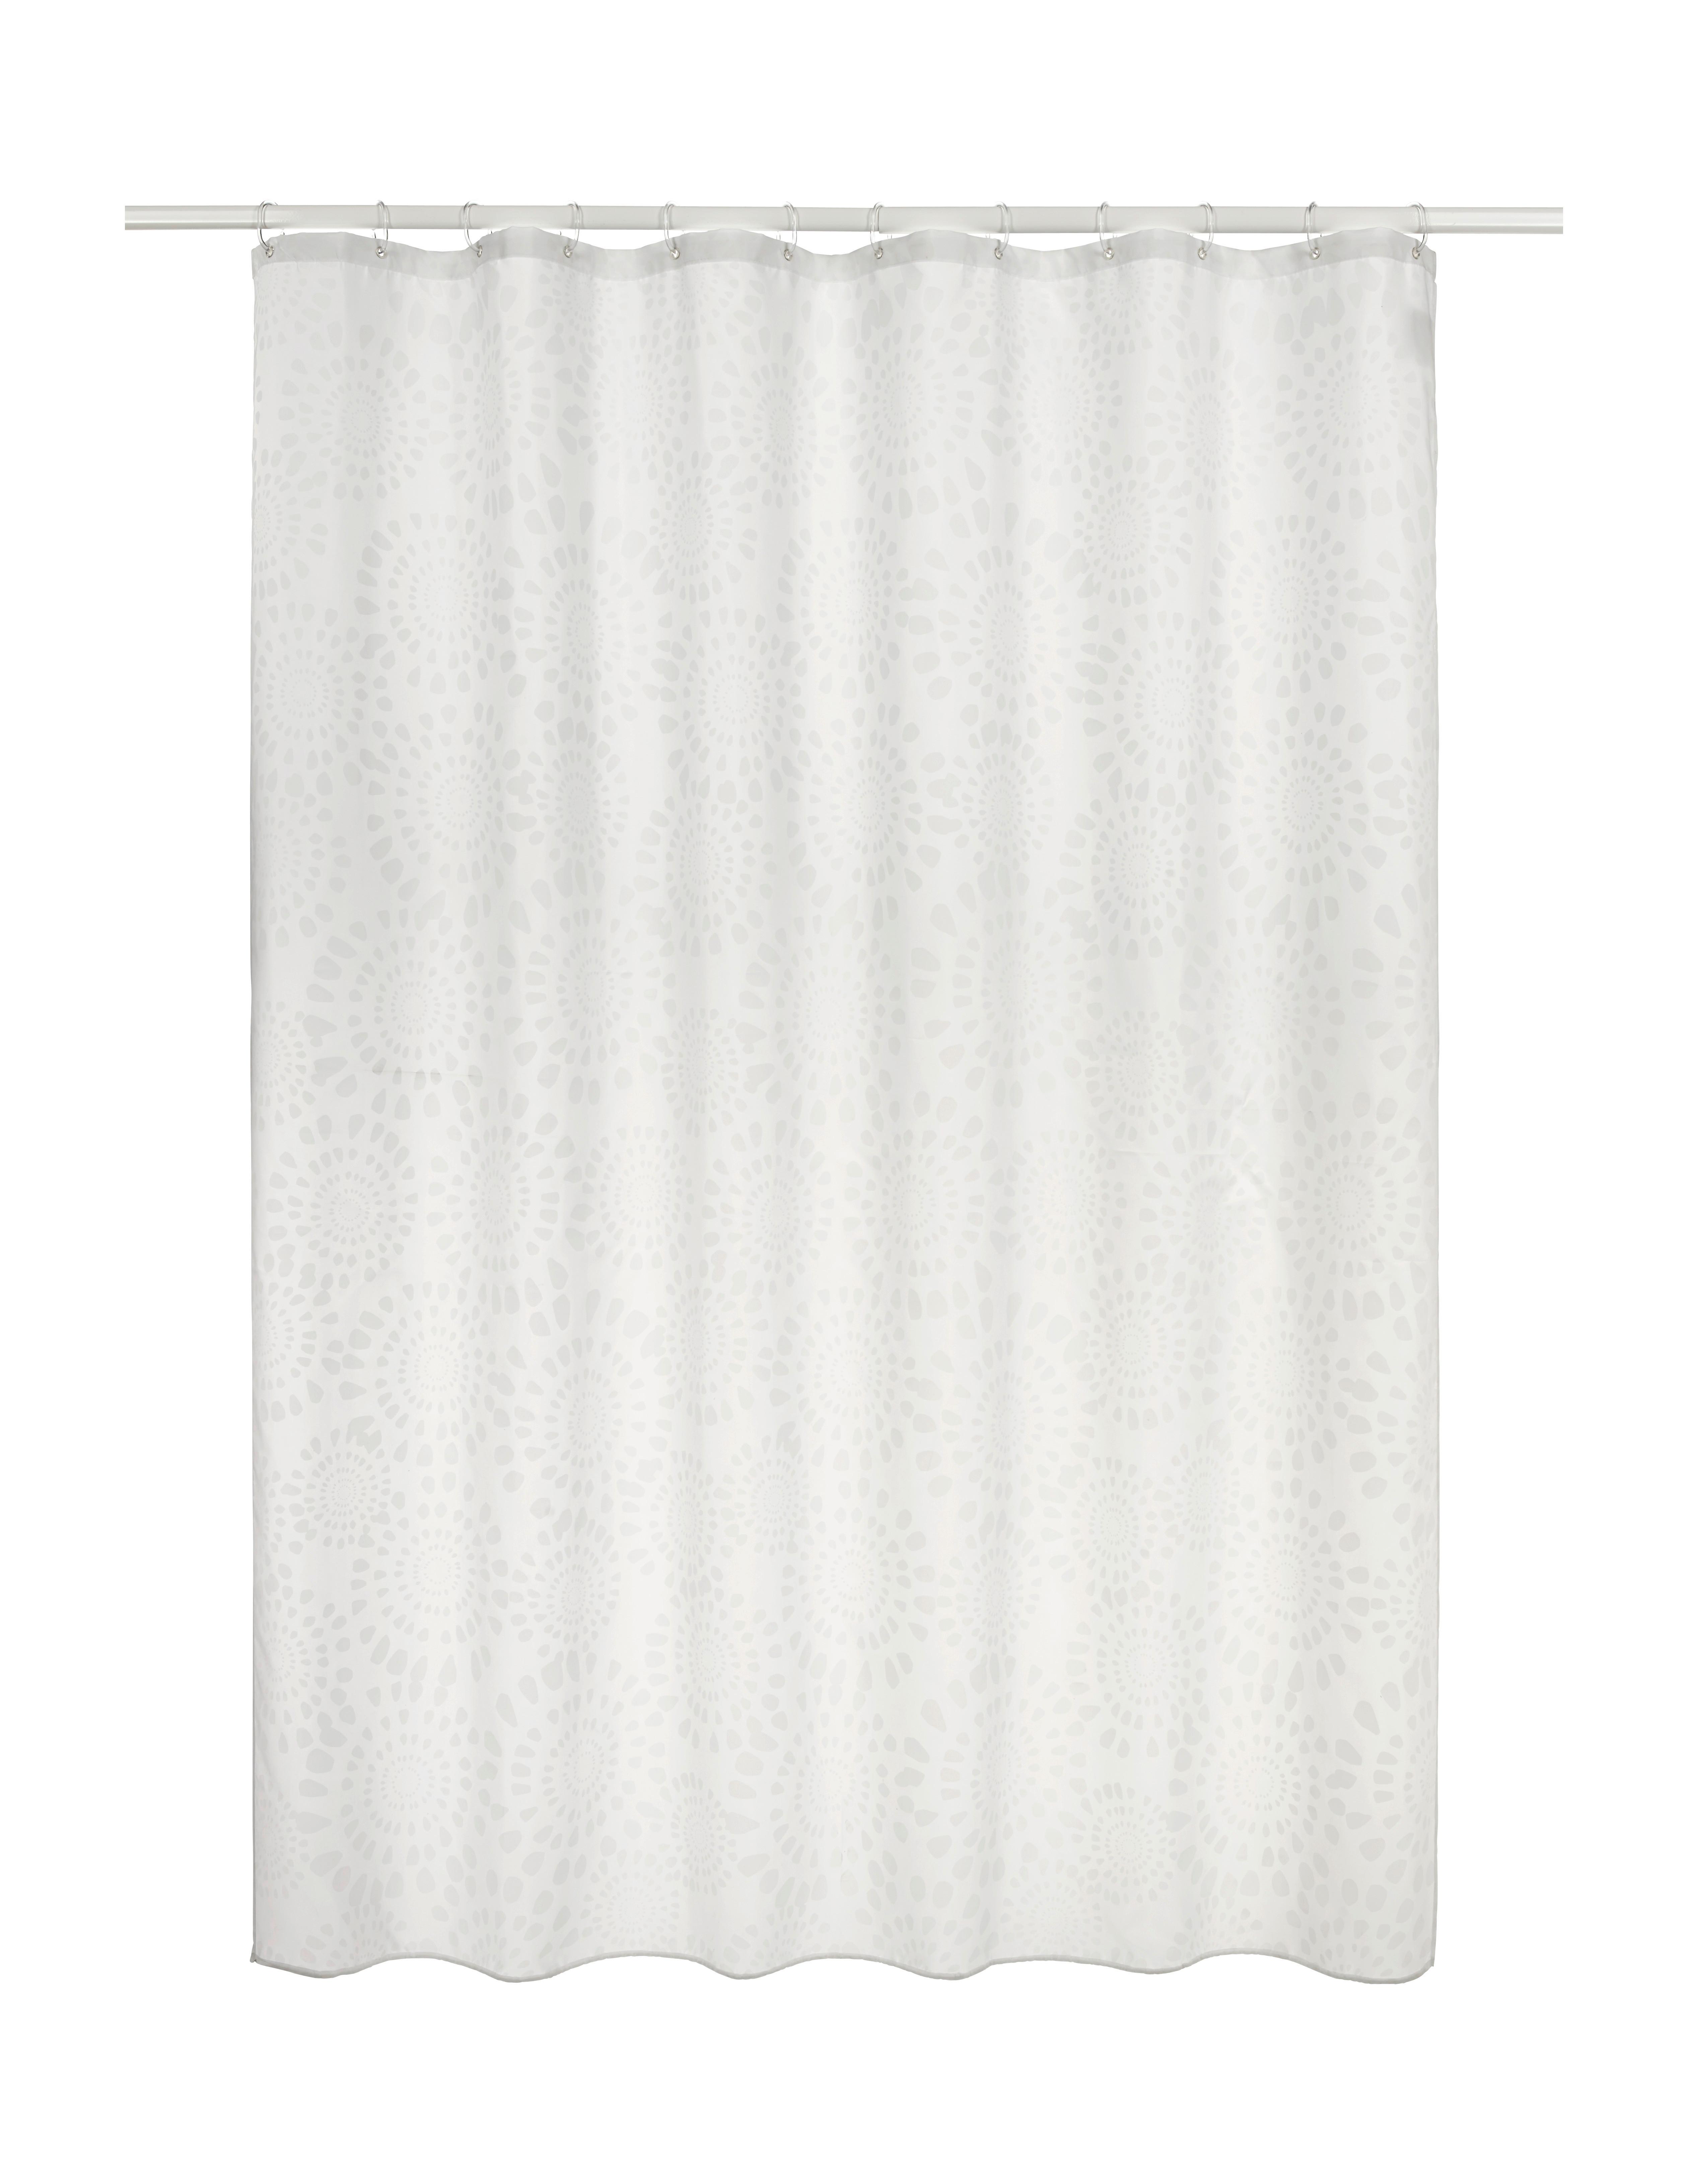 Duschvorhang Blanche in Weiß ca. 180x200cm - Weiß (180/200cm) - Modern Living